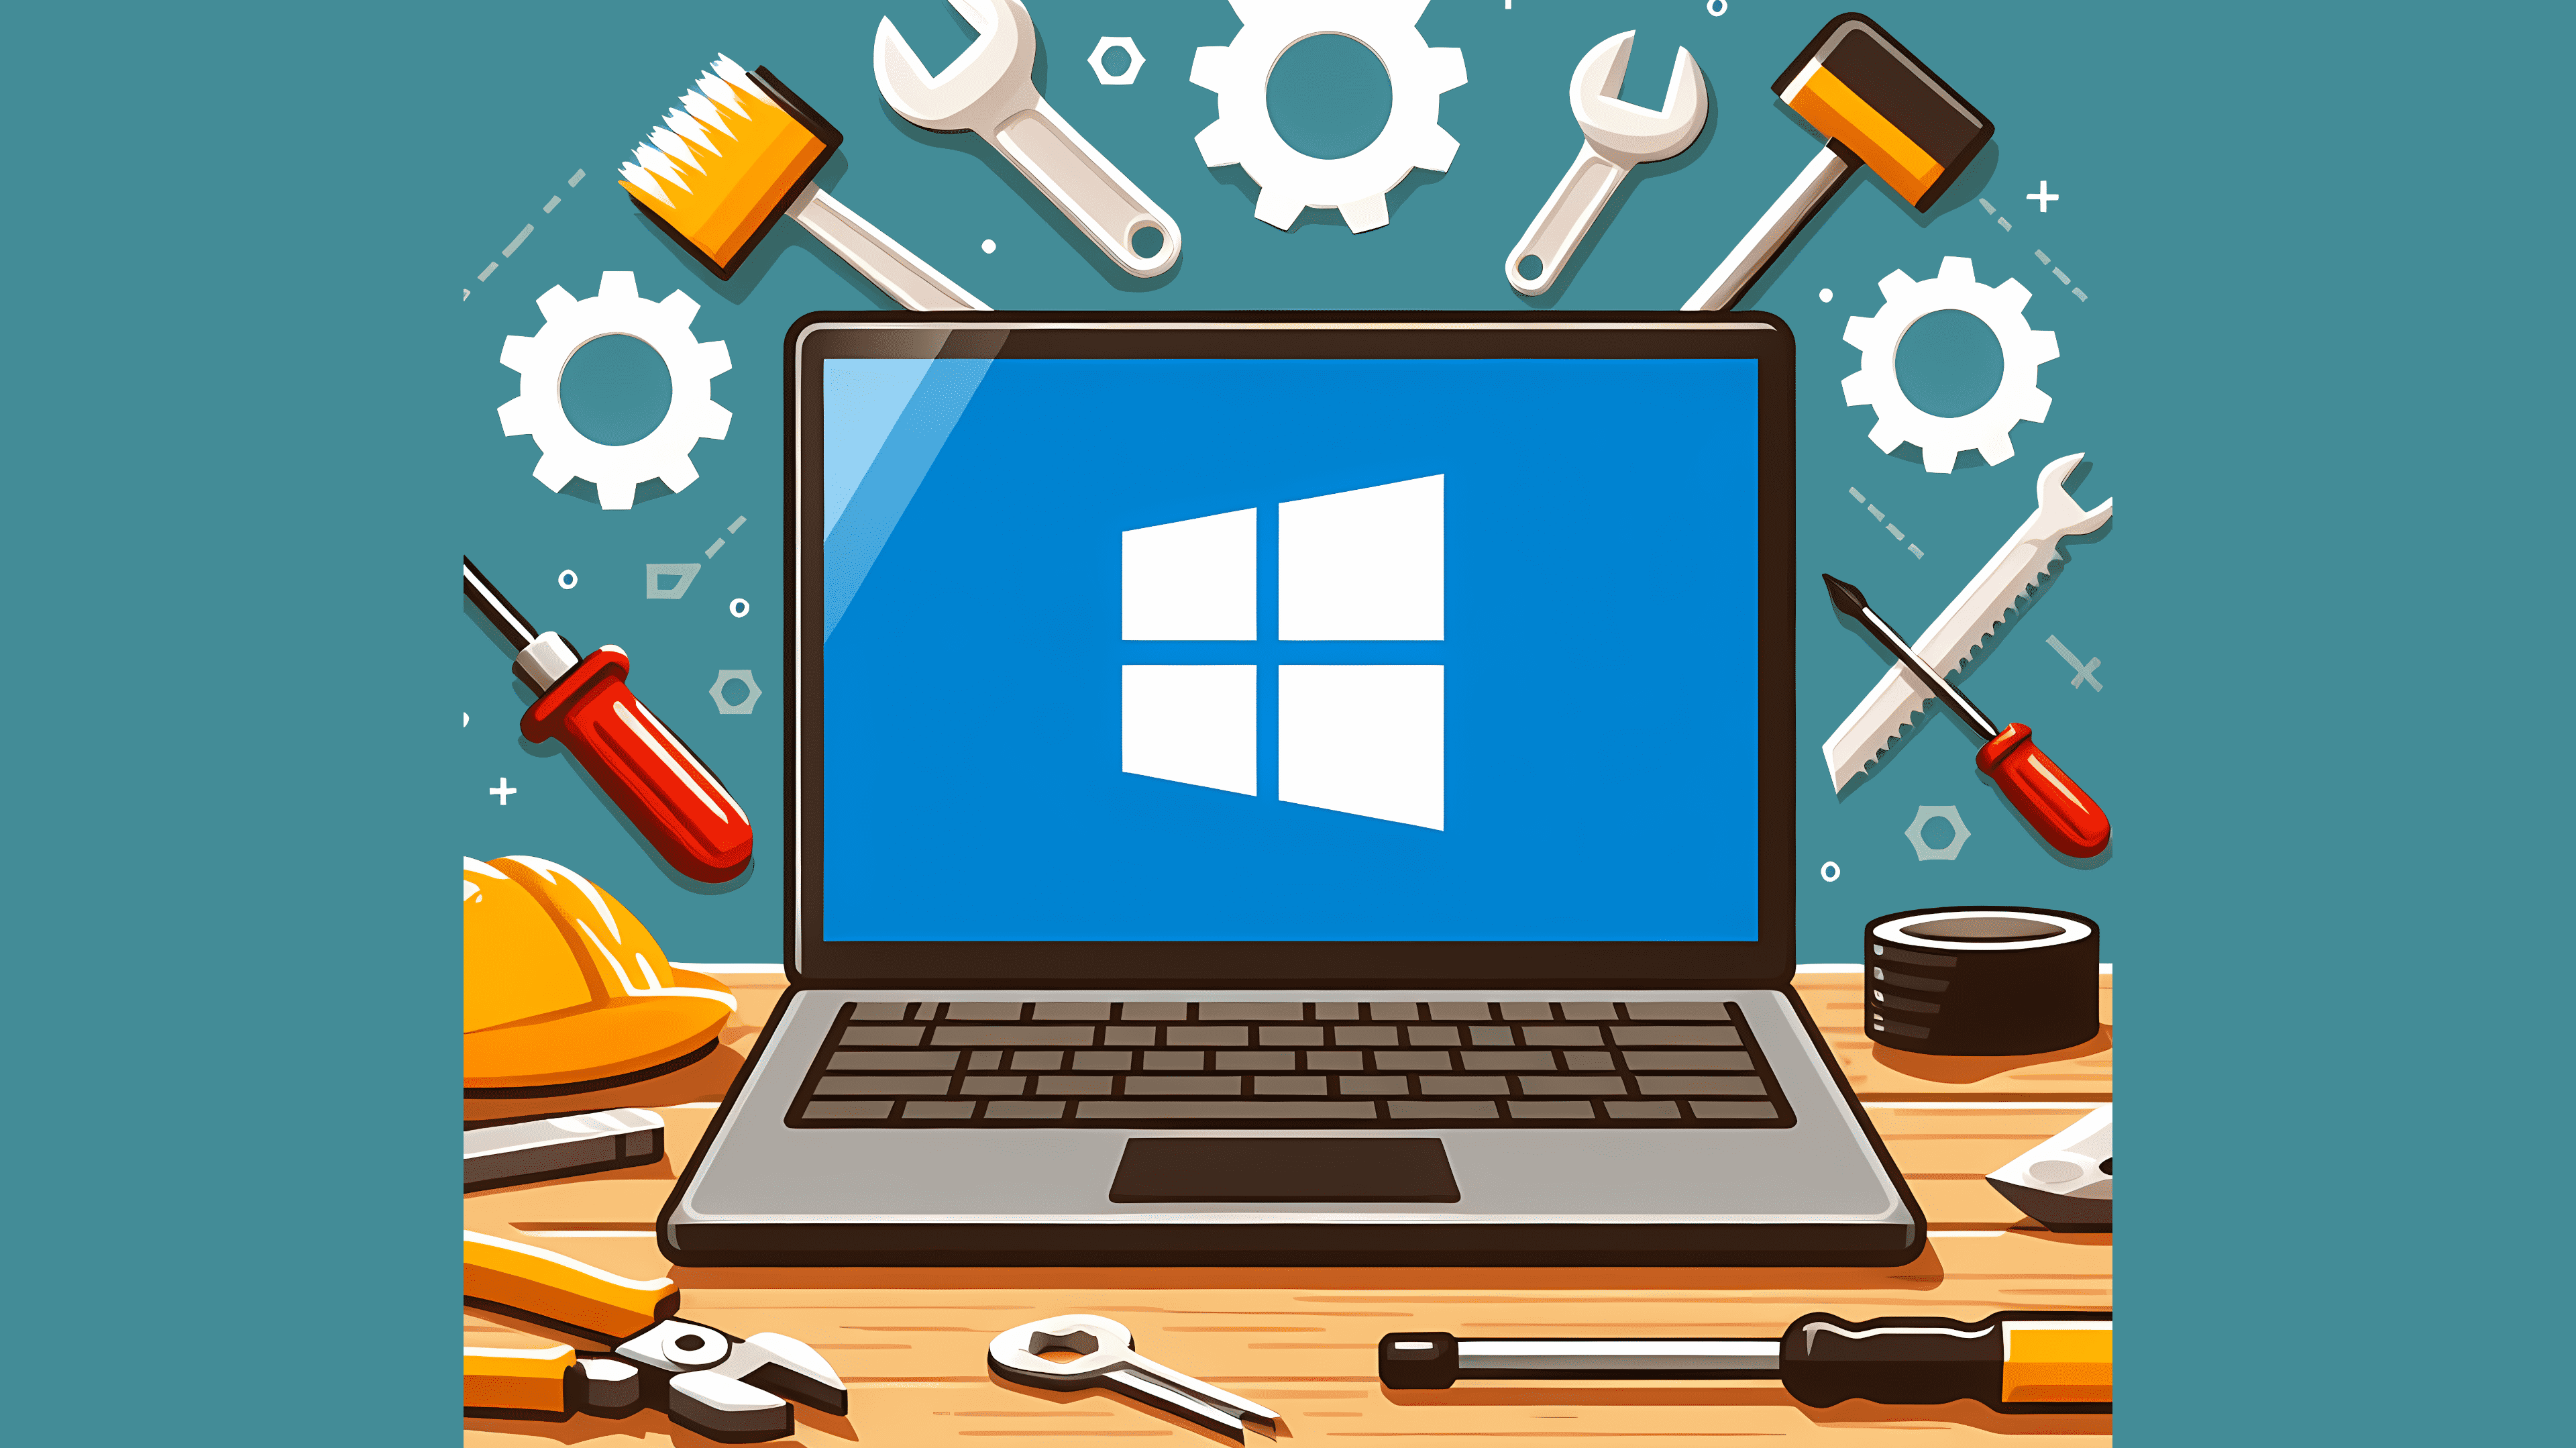 Stilisiertes Bild: Ein Laptop mit Windows-Logo auf einer Werkbank, umgeben von Werkzeugen und Zahrädern